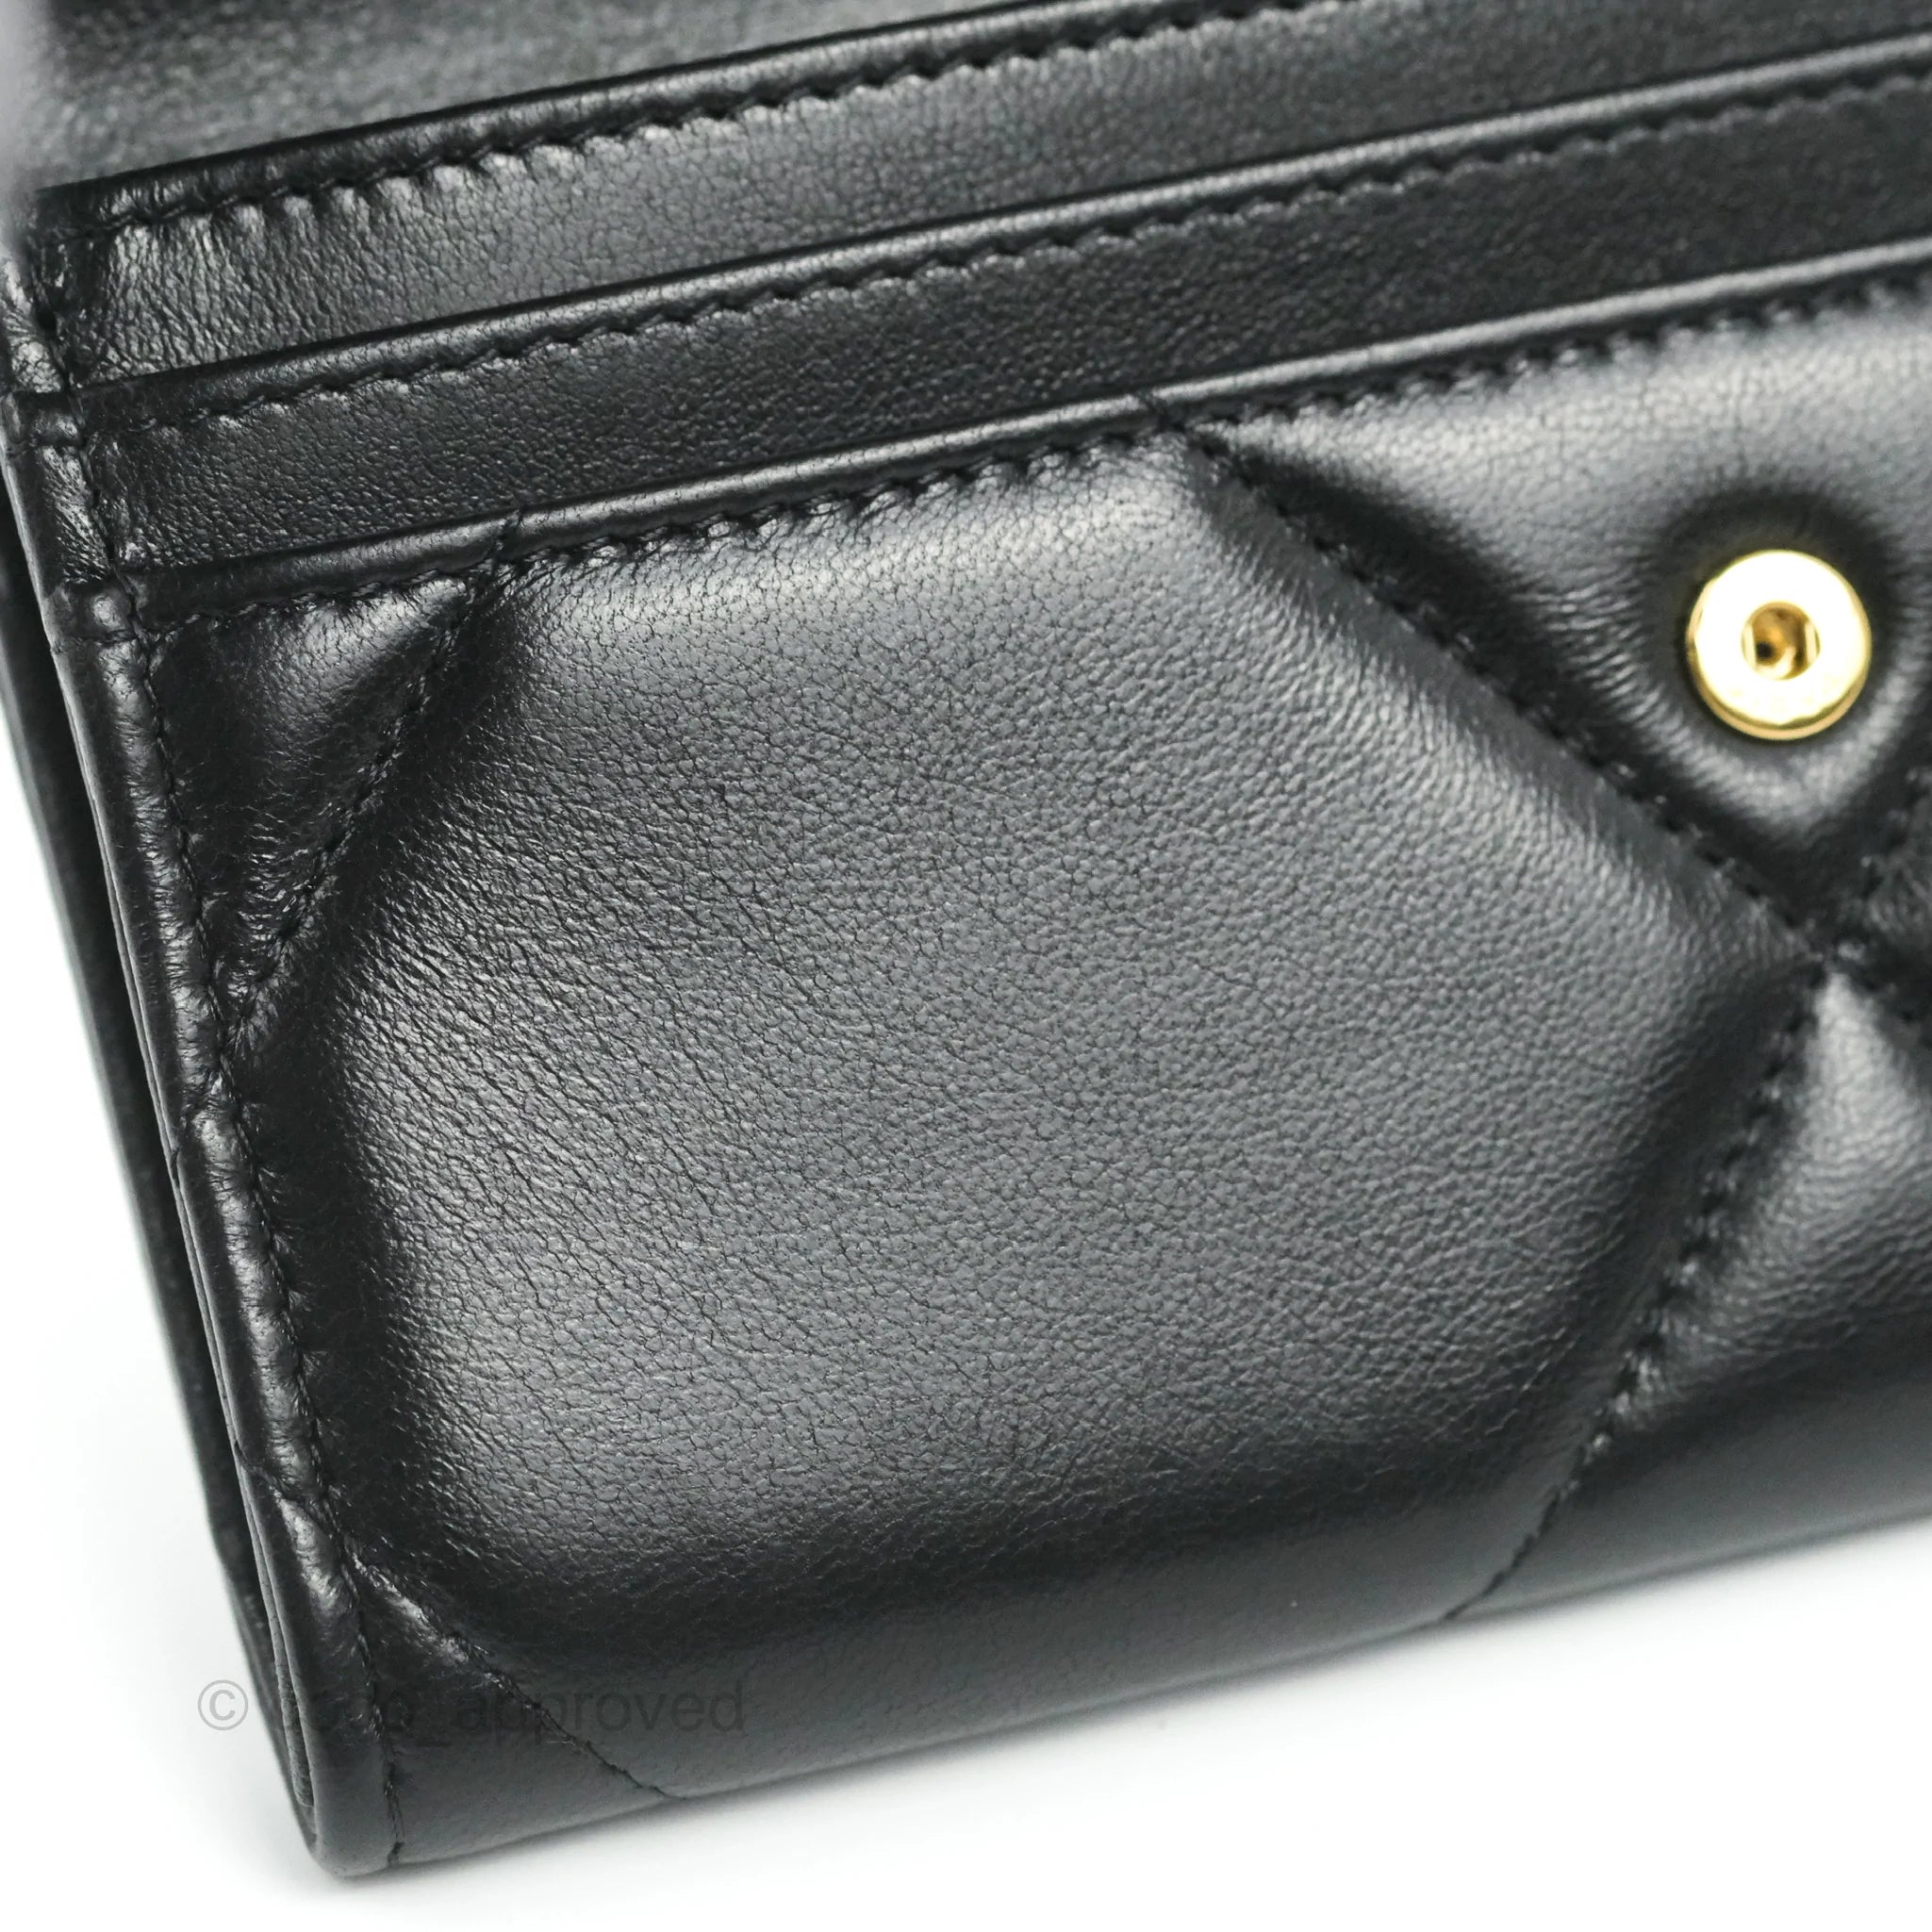 Chanel 19 Zip Card Holder in Black Lambskin GHW